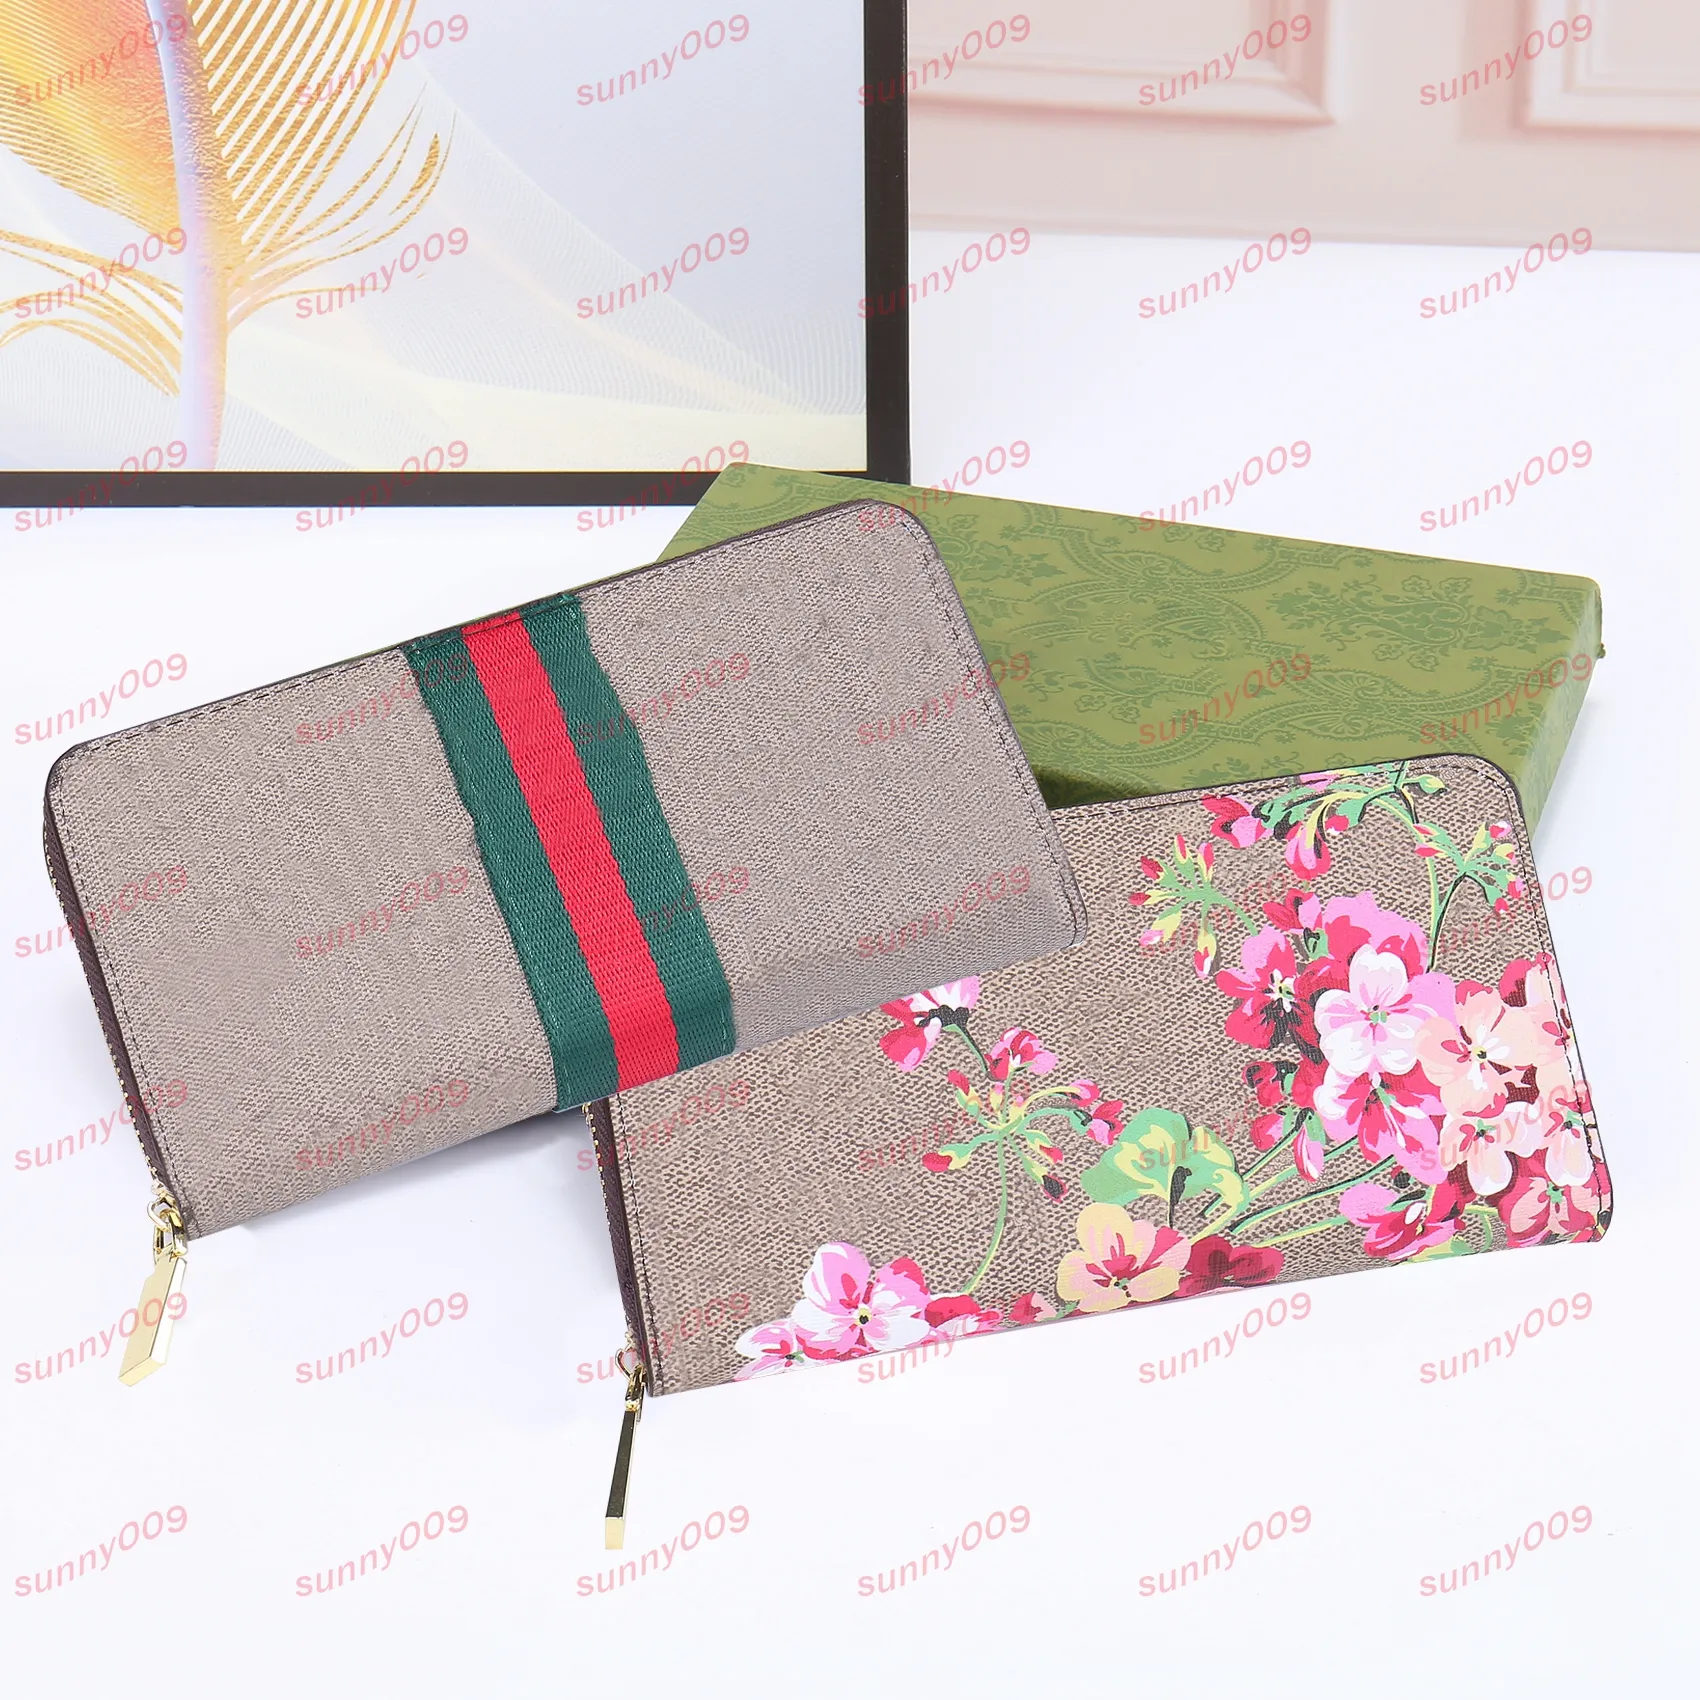 Lüks tasarımcı cüzdan moda para çantası cüzdanları uzun kadın çantalar çok katmanlı kart tutucu pasaport tutucu baskılı dekorasyon227a